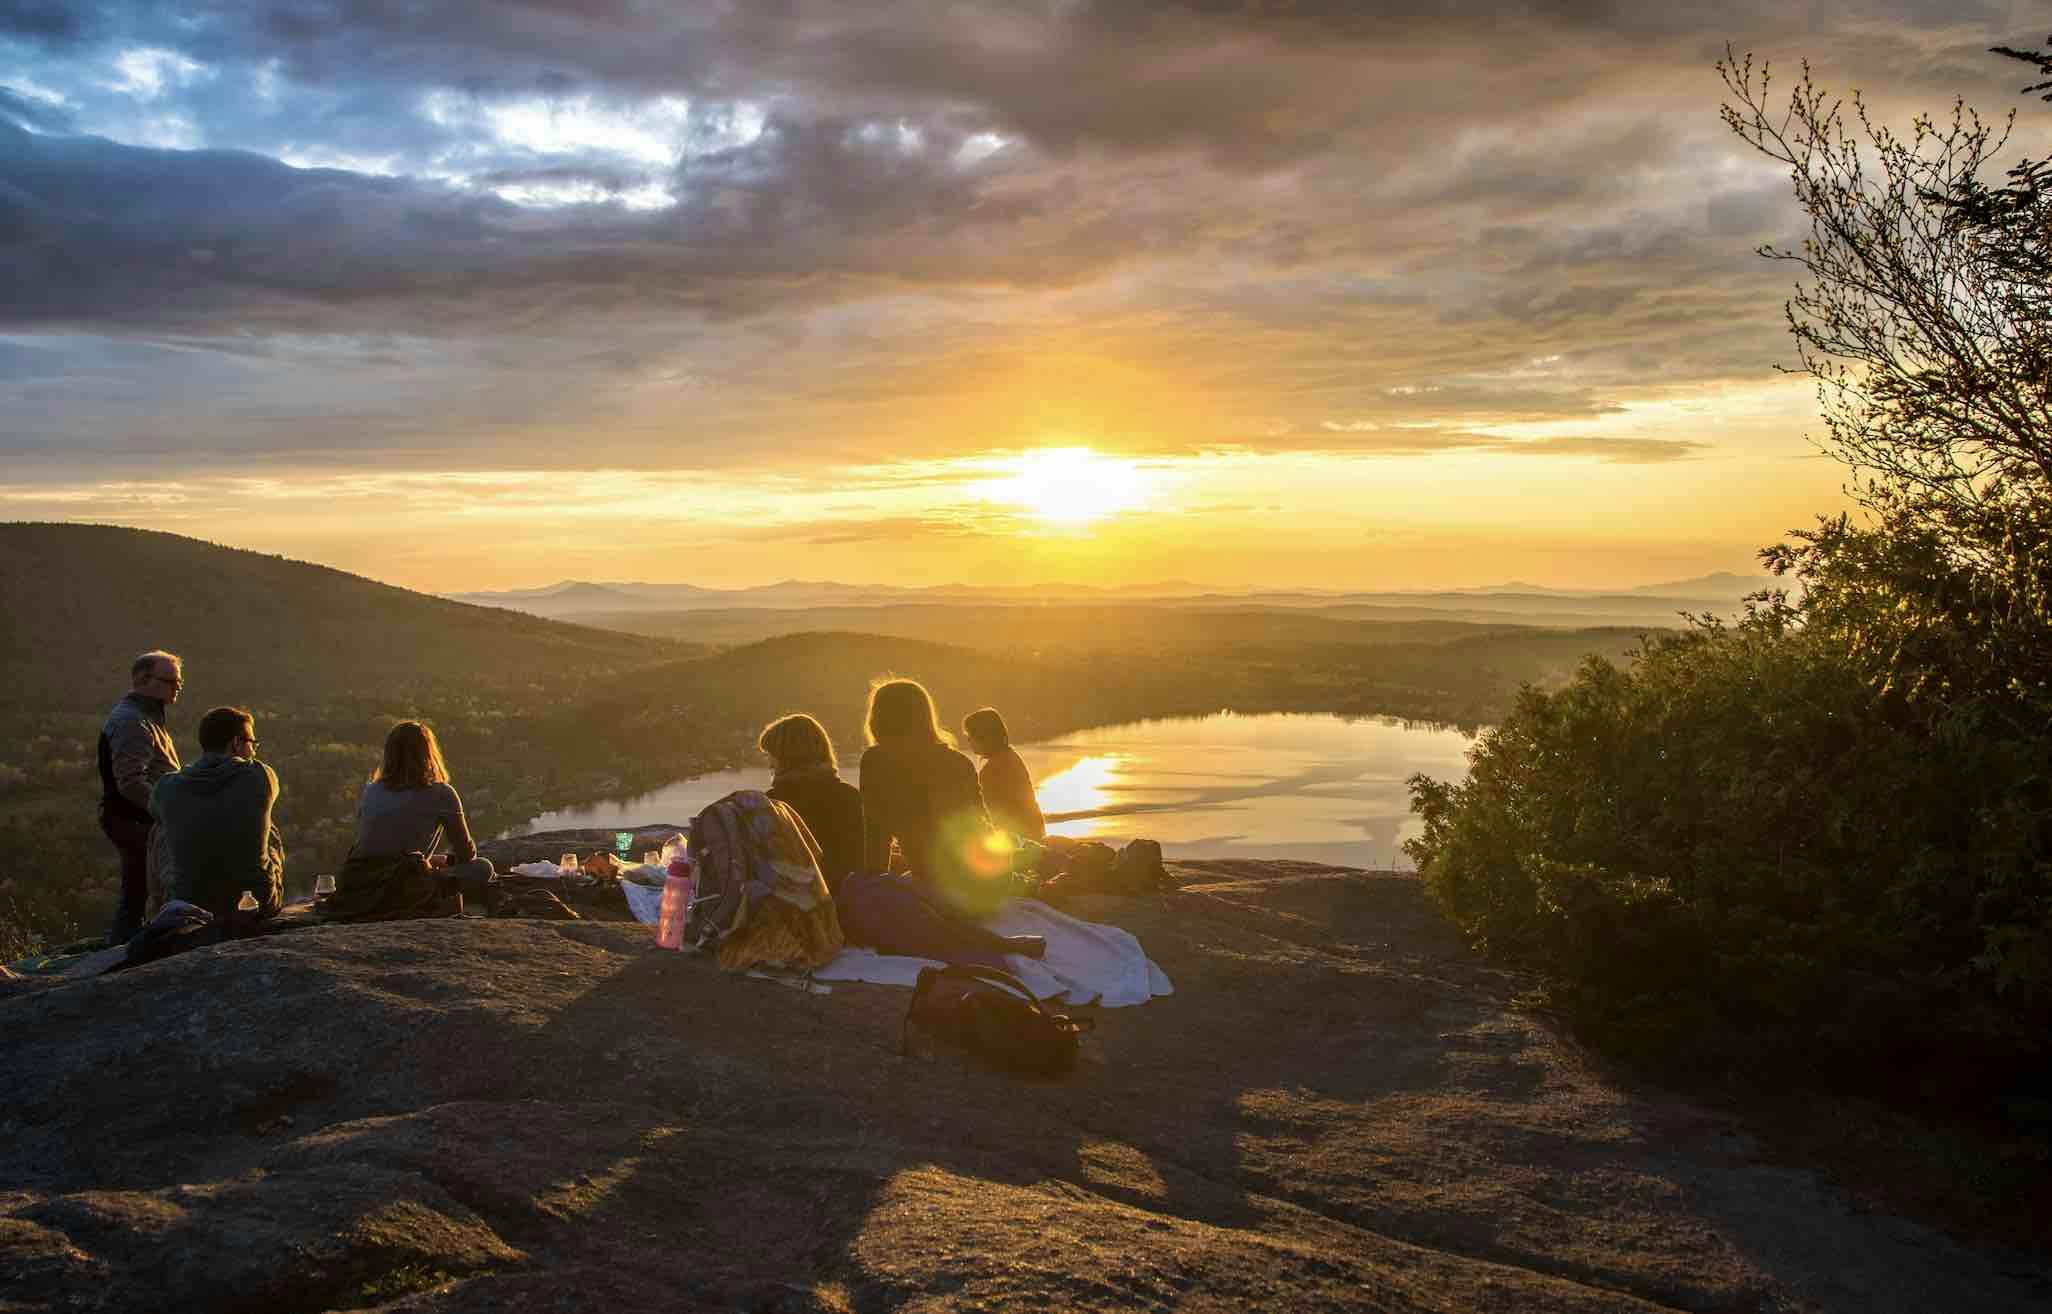 A group having a picnic at a viewpoint at sunset